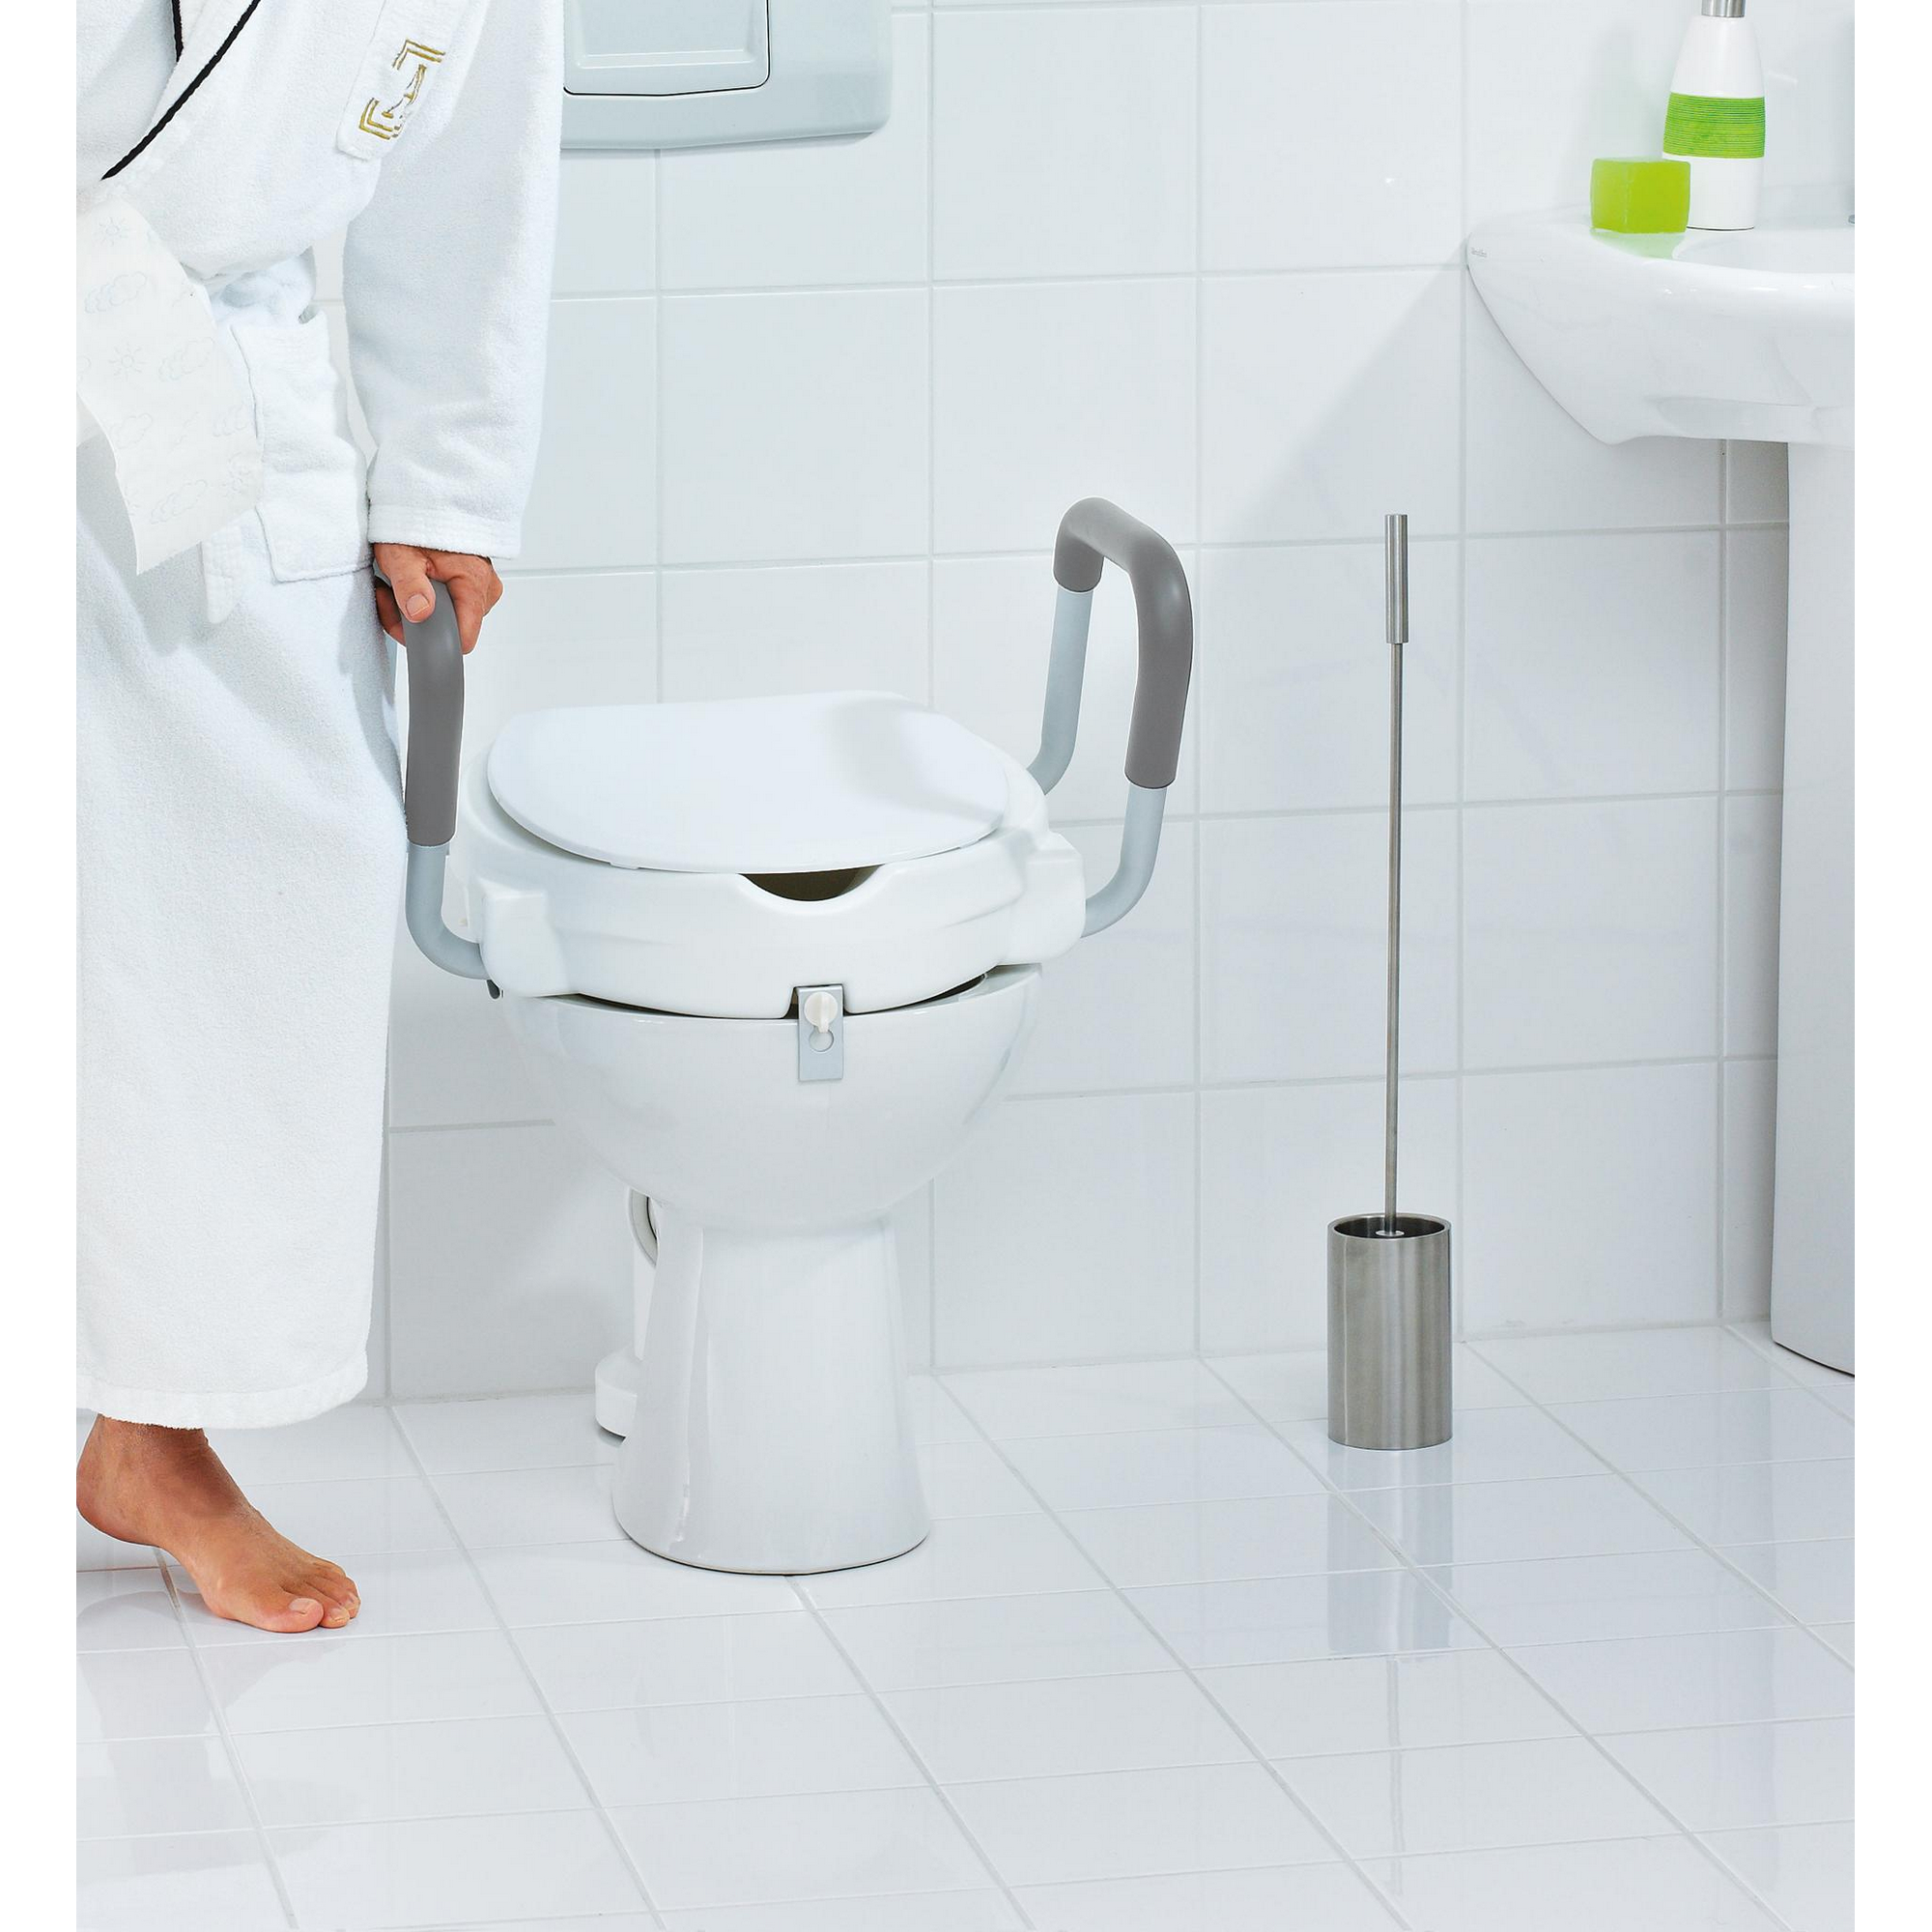 WC-Erhöhung mit Griffen und Deckel 'Comfort' weiß, bis 150 kg + product picture